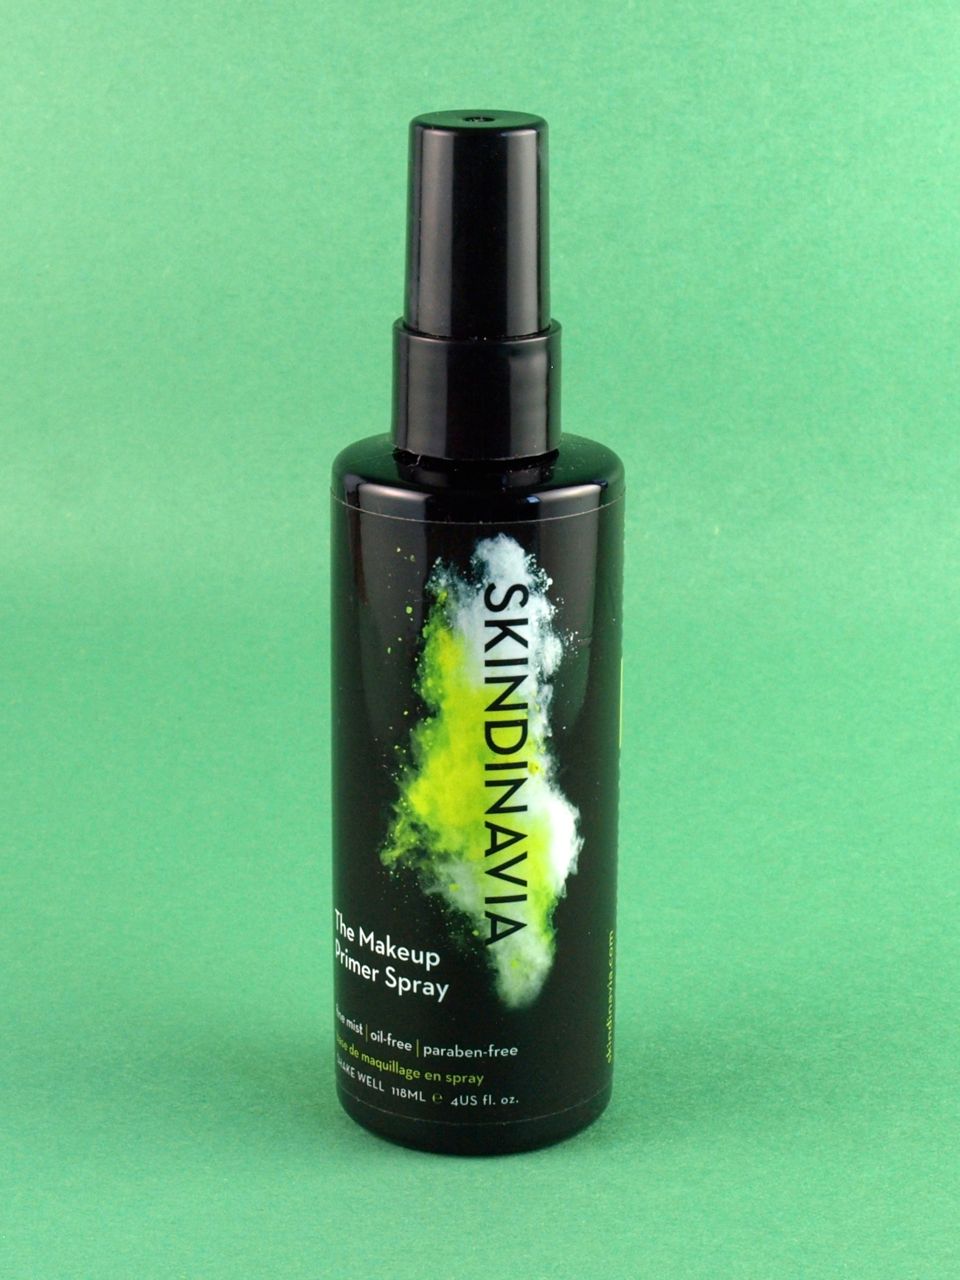 Skindinavia The Makeup Primer Spray: Review